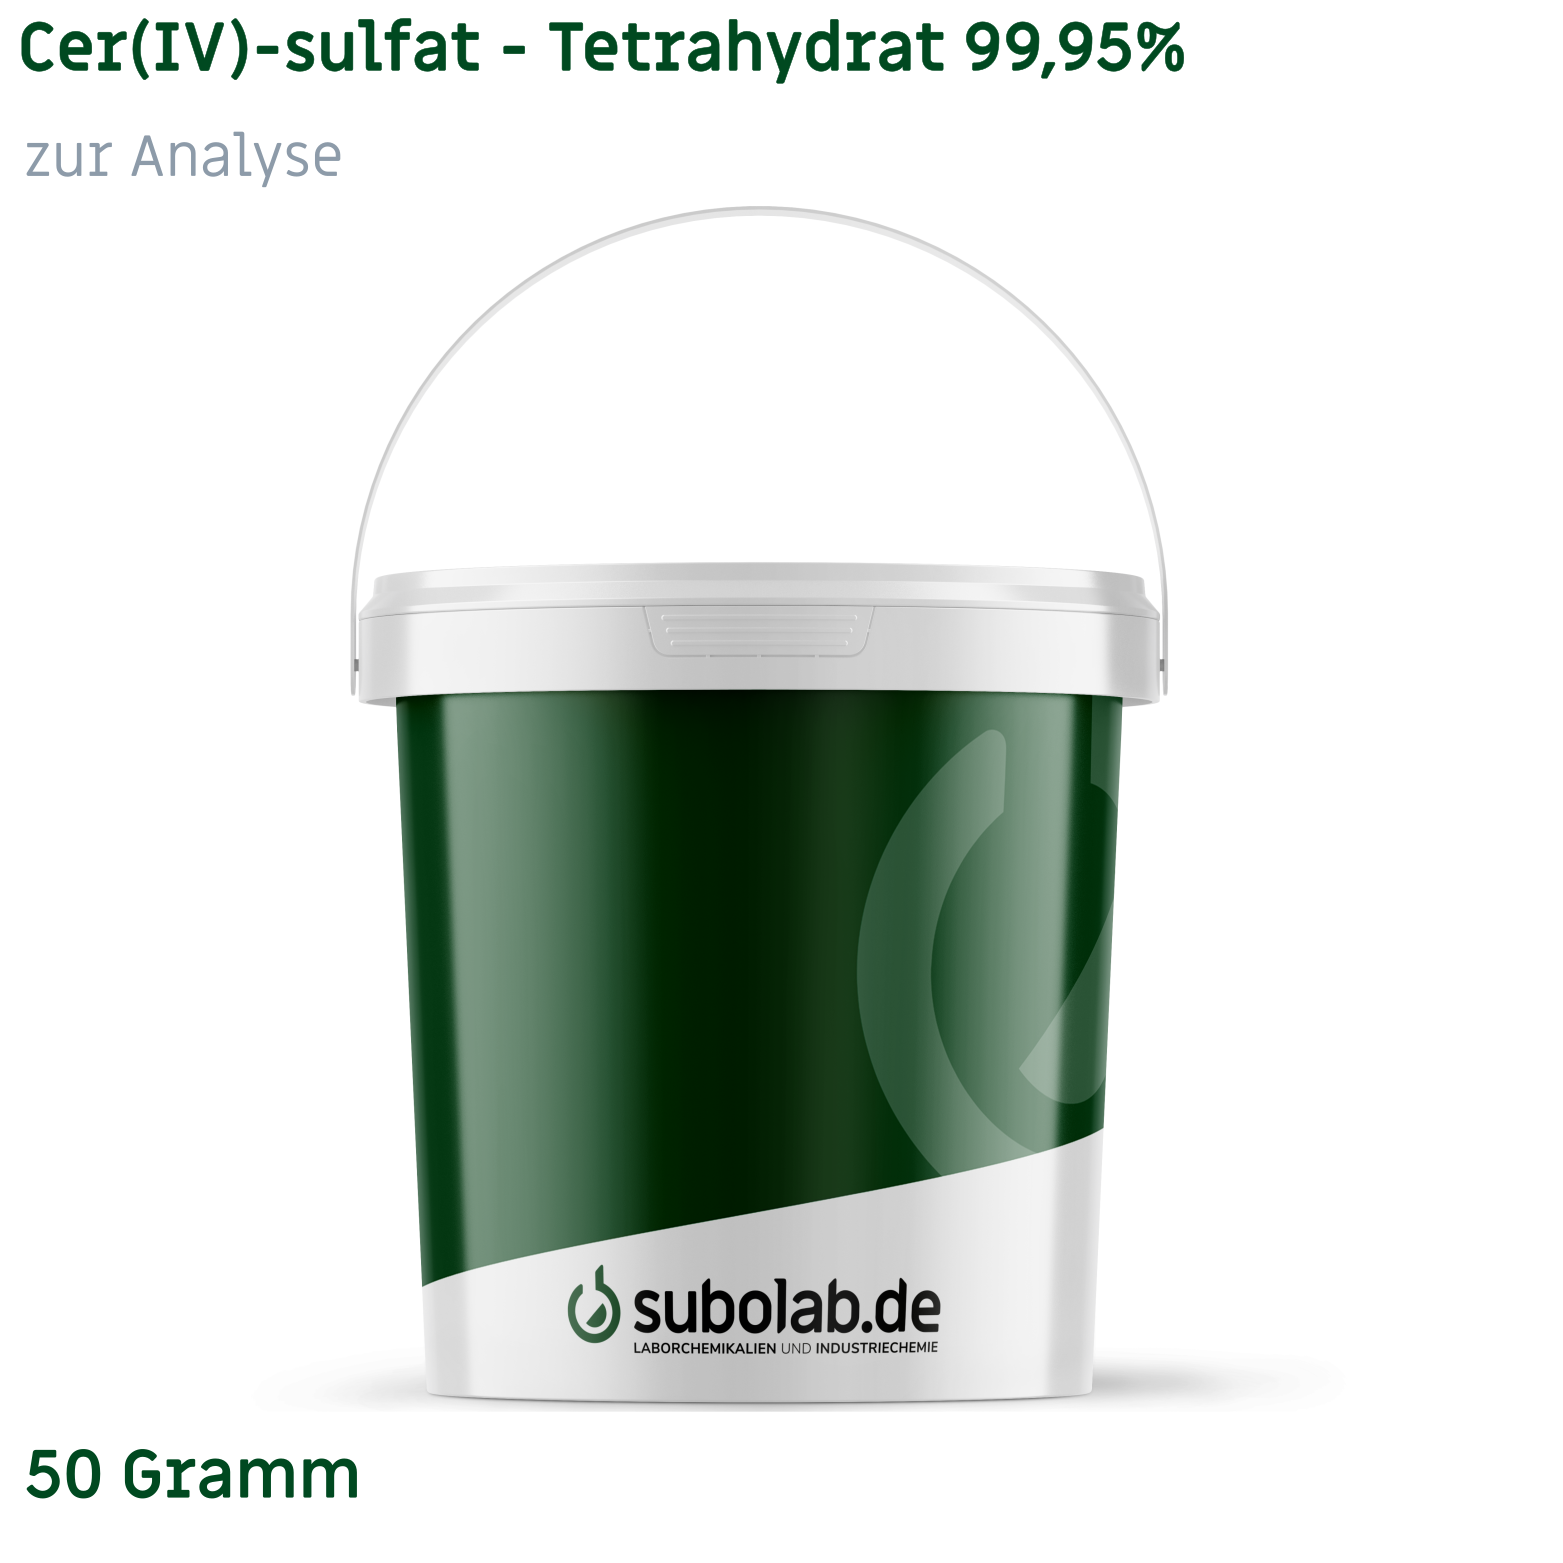 Bild von Cer(IV)-sulfat - Tetrahydrat 99,95% zur Analyse (50 Gramm)